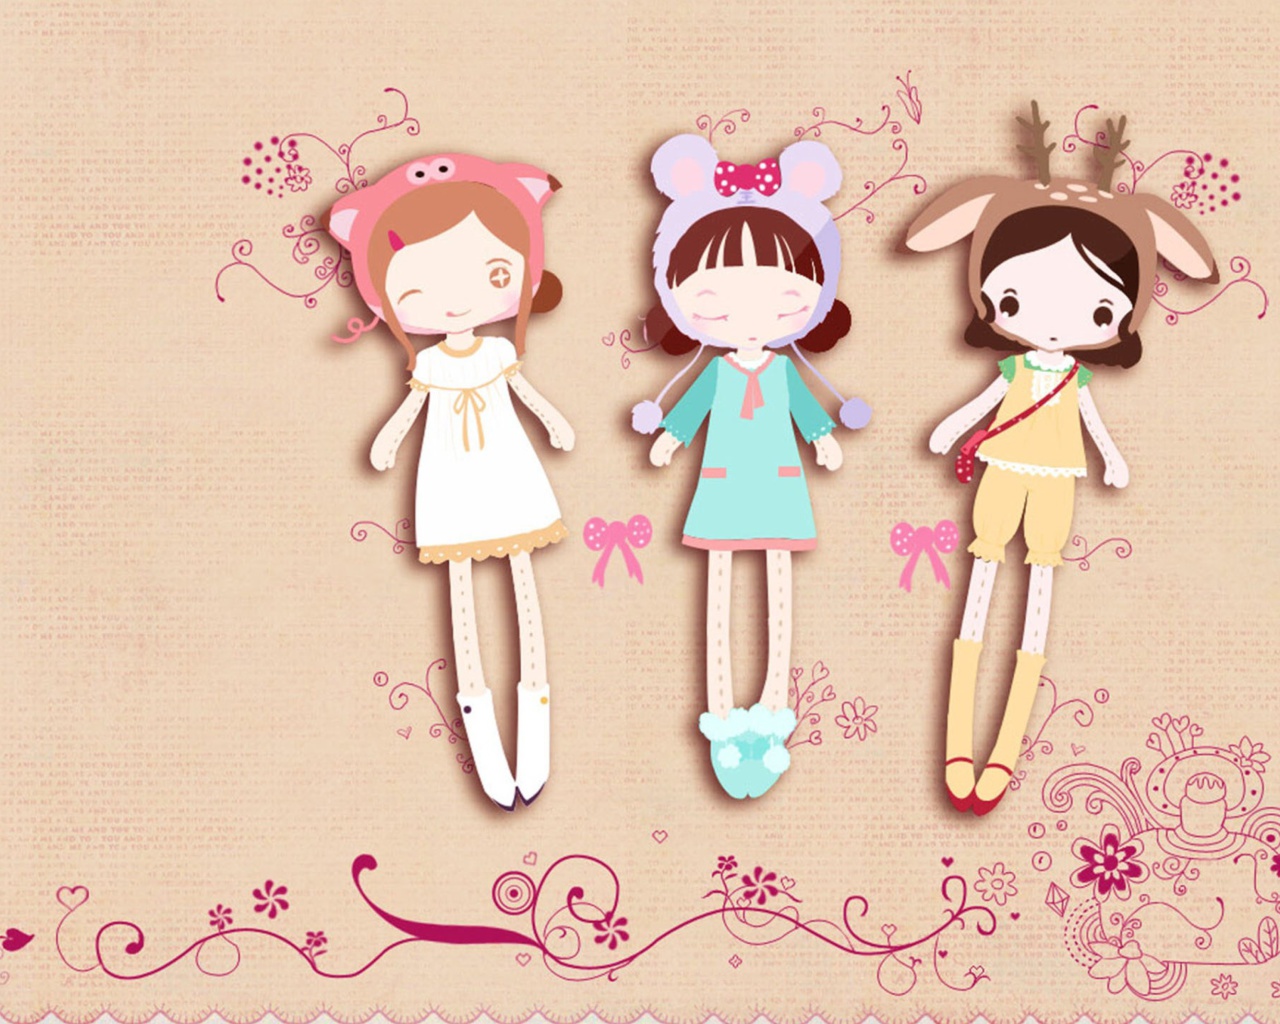 Das Cherished Friends Dolls Wallpaper 1280x1024